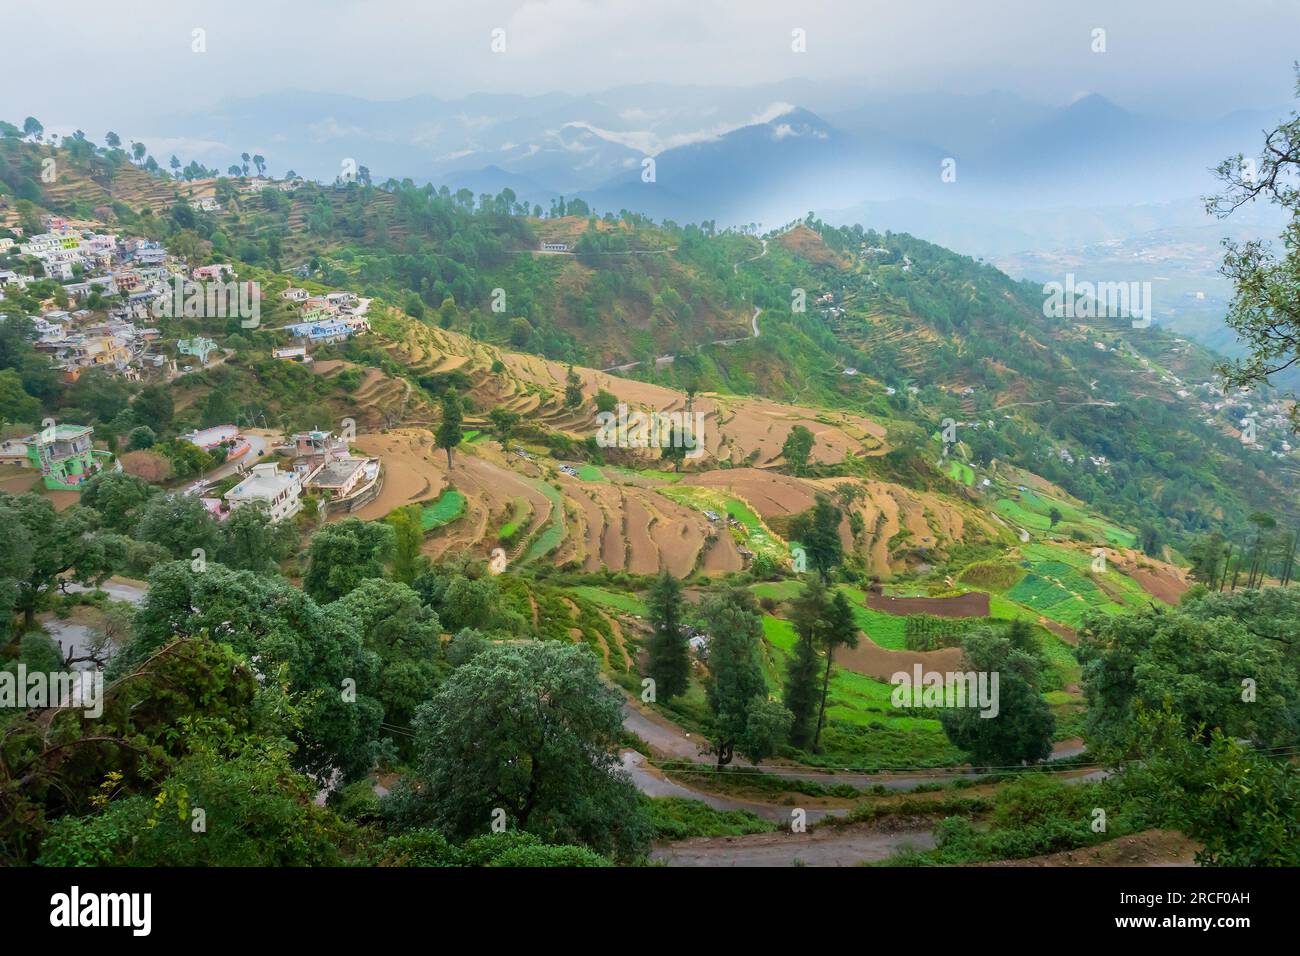 Stufenlandwirtschaft oder Terrassenlandwirtschaft. Steile Hügel oder Berghänge werden so geschnitten, dass sie ebenerdige Flächen für das Anpflanzen von Pflanzen bilden. Neblig, neblig Himalaya Indien Stockfoto